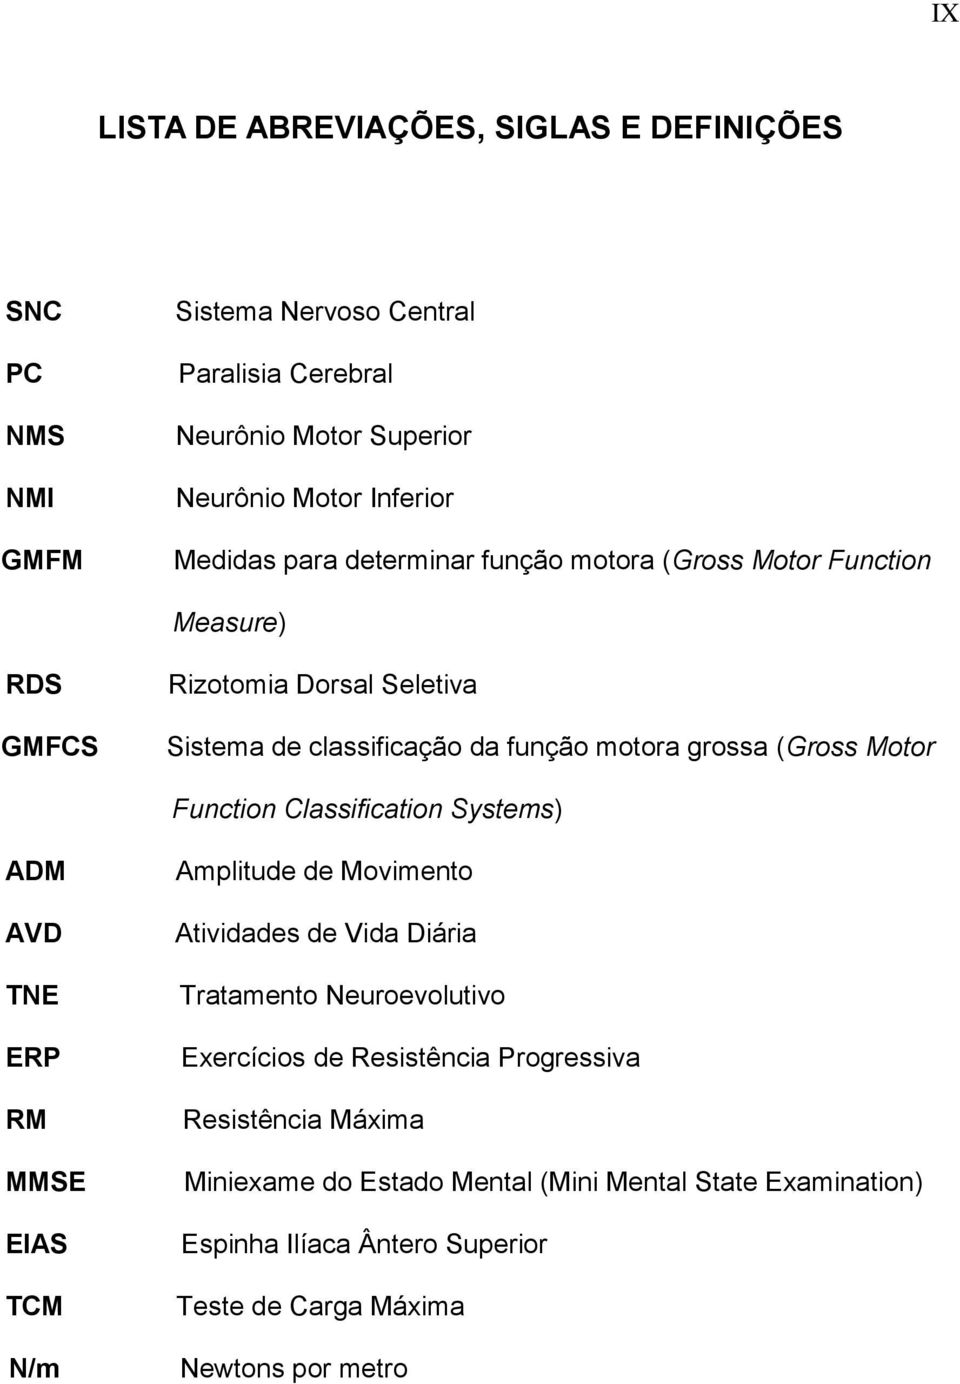 Function Classification Systems) ADM AVD TNE ERP RM MMSE EIAS TCM N/m Amplitude de Movimento Atividades de Vida Diária Tratamento Neuroevolutivo Exercícios de